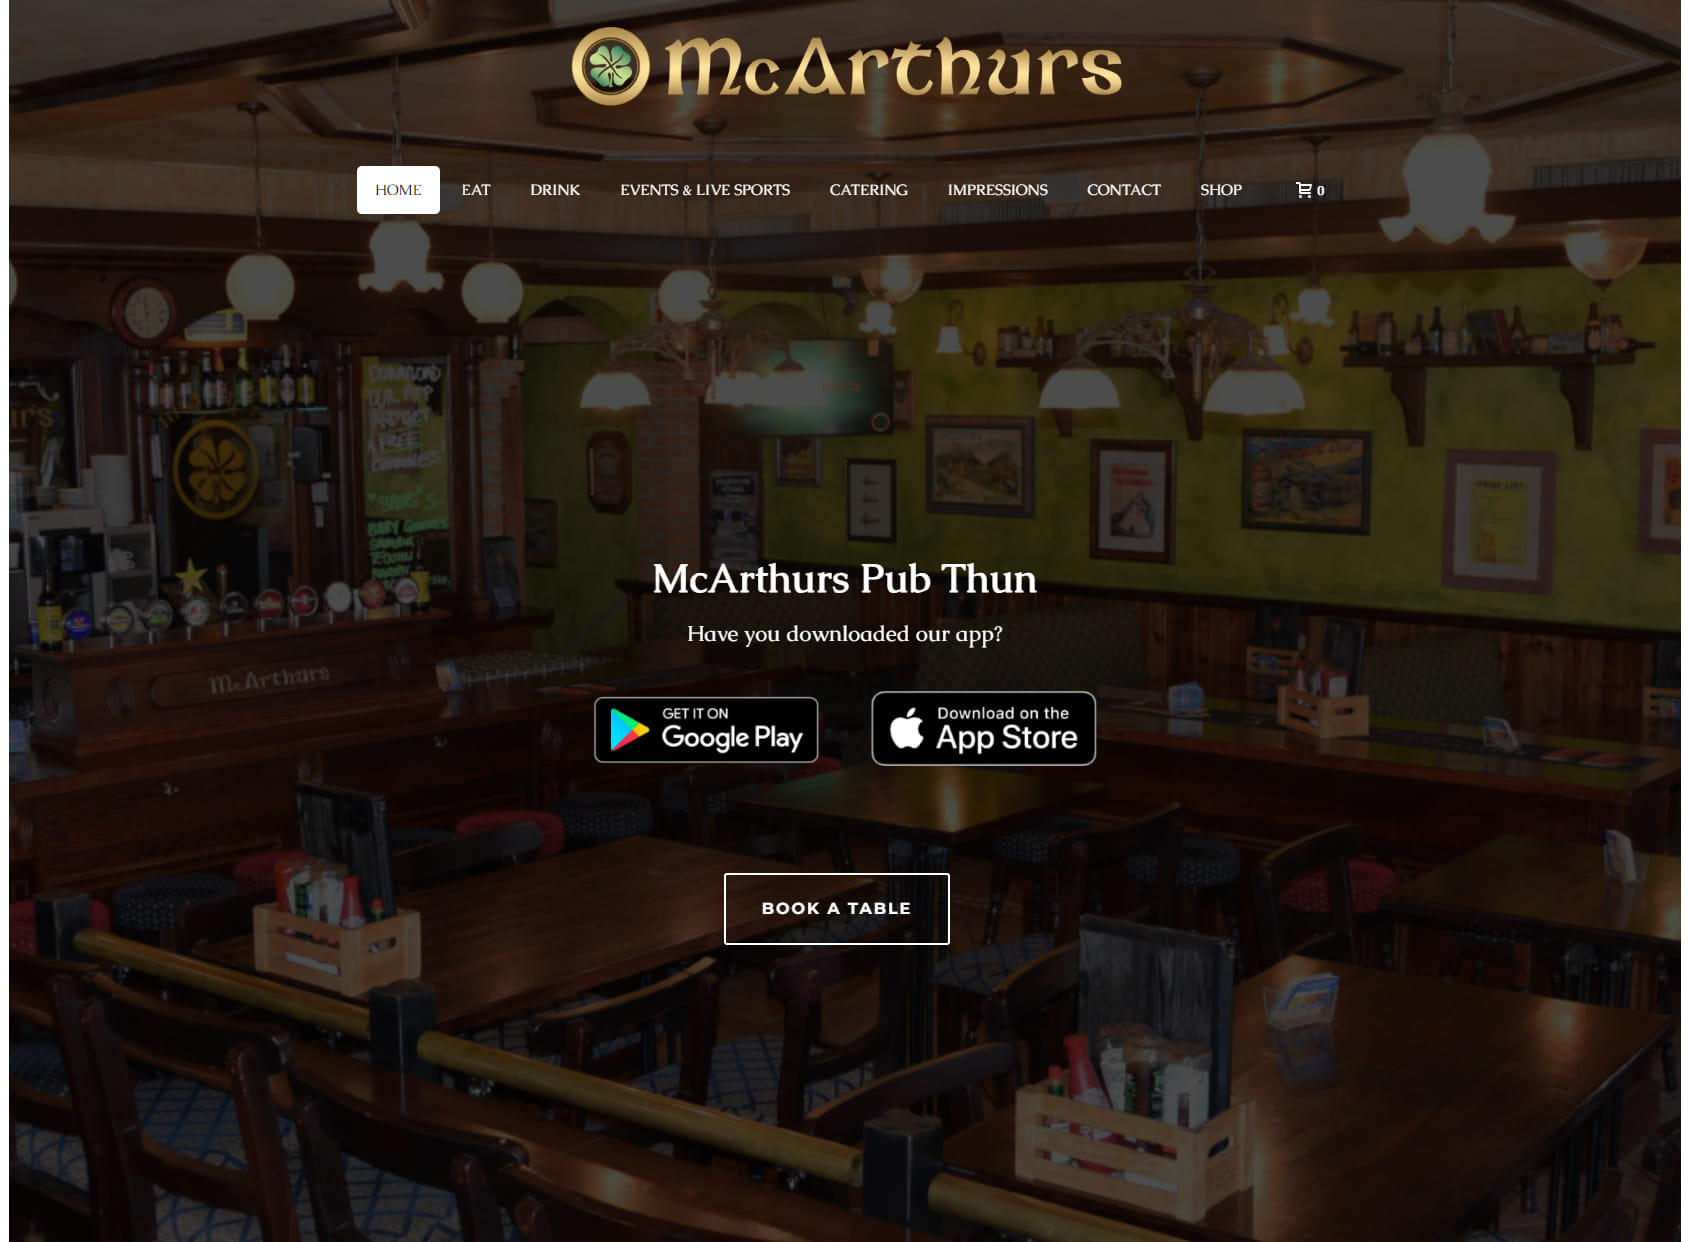 McArthurs Pub Thun